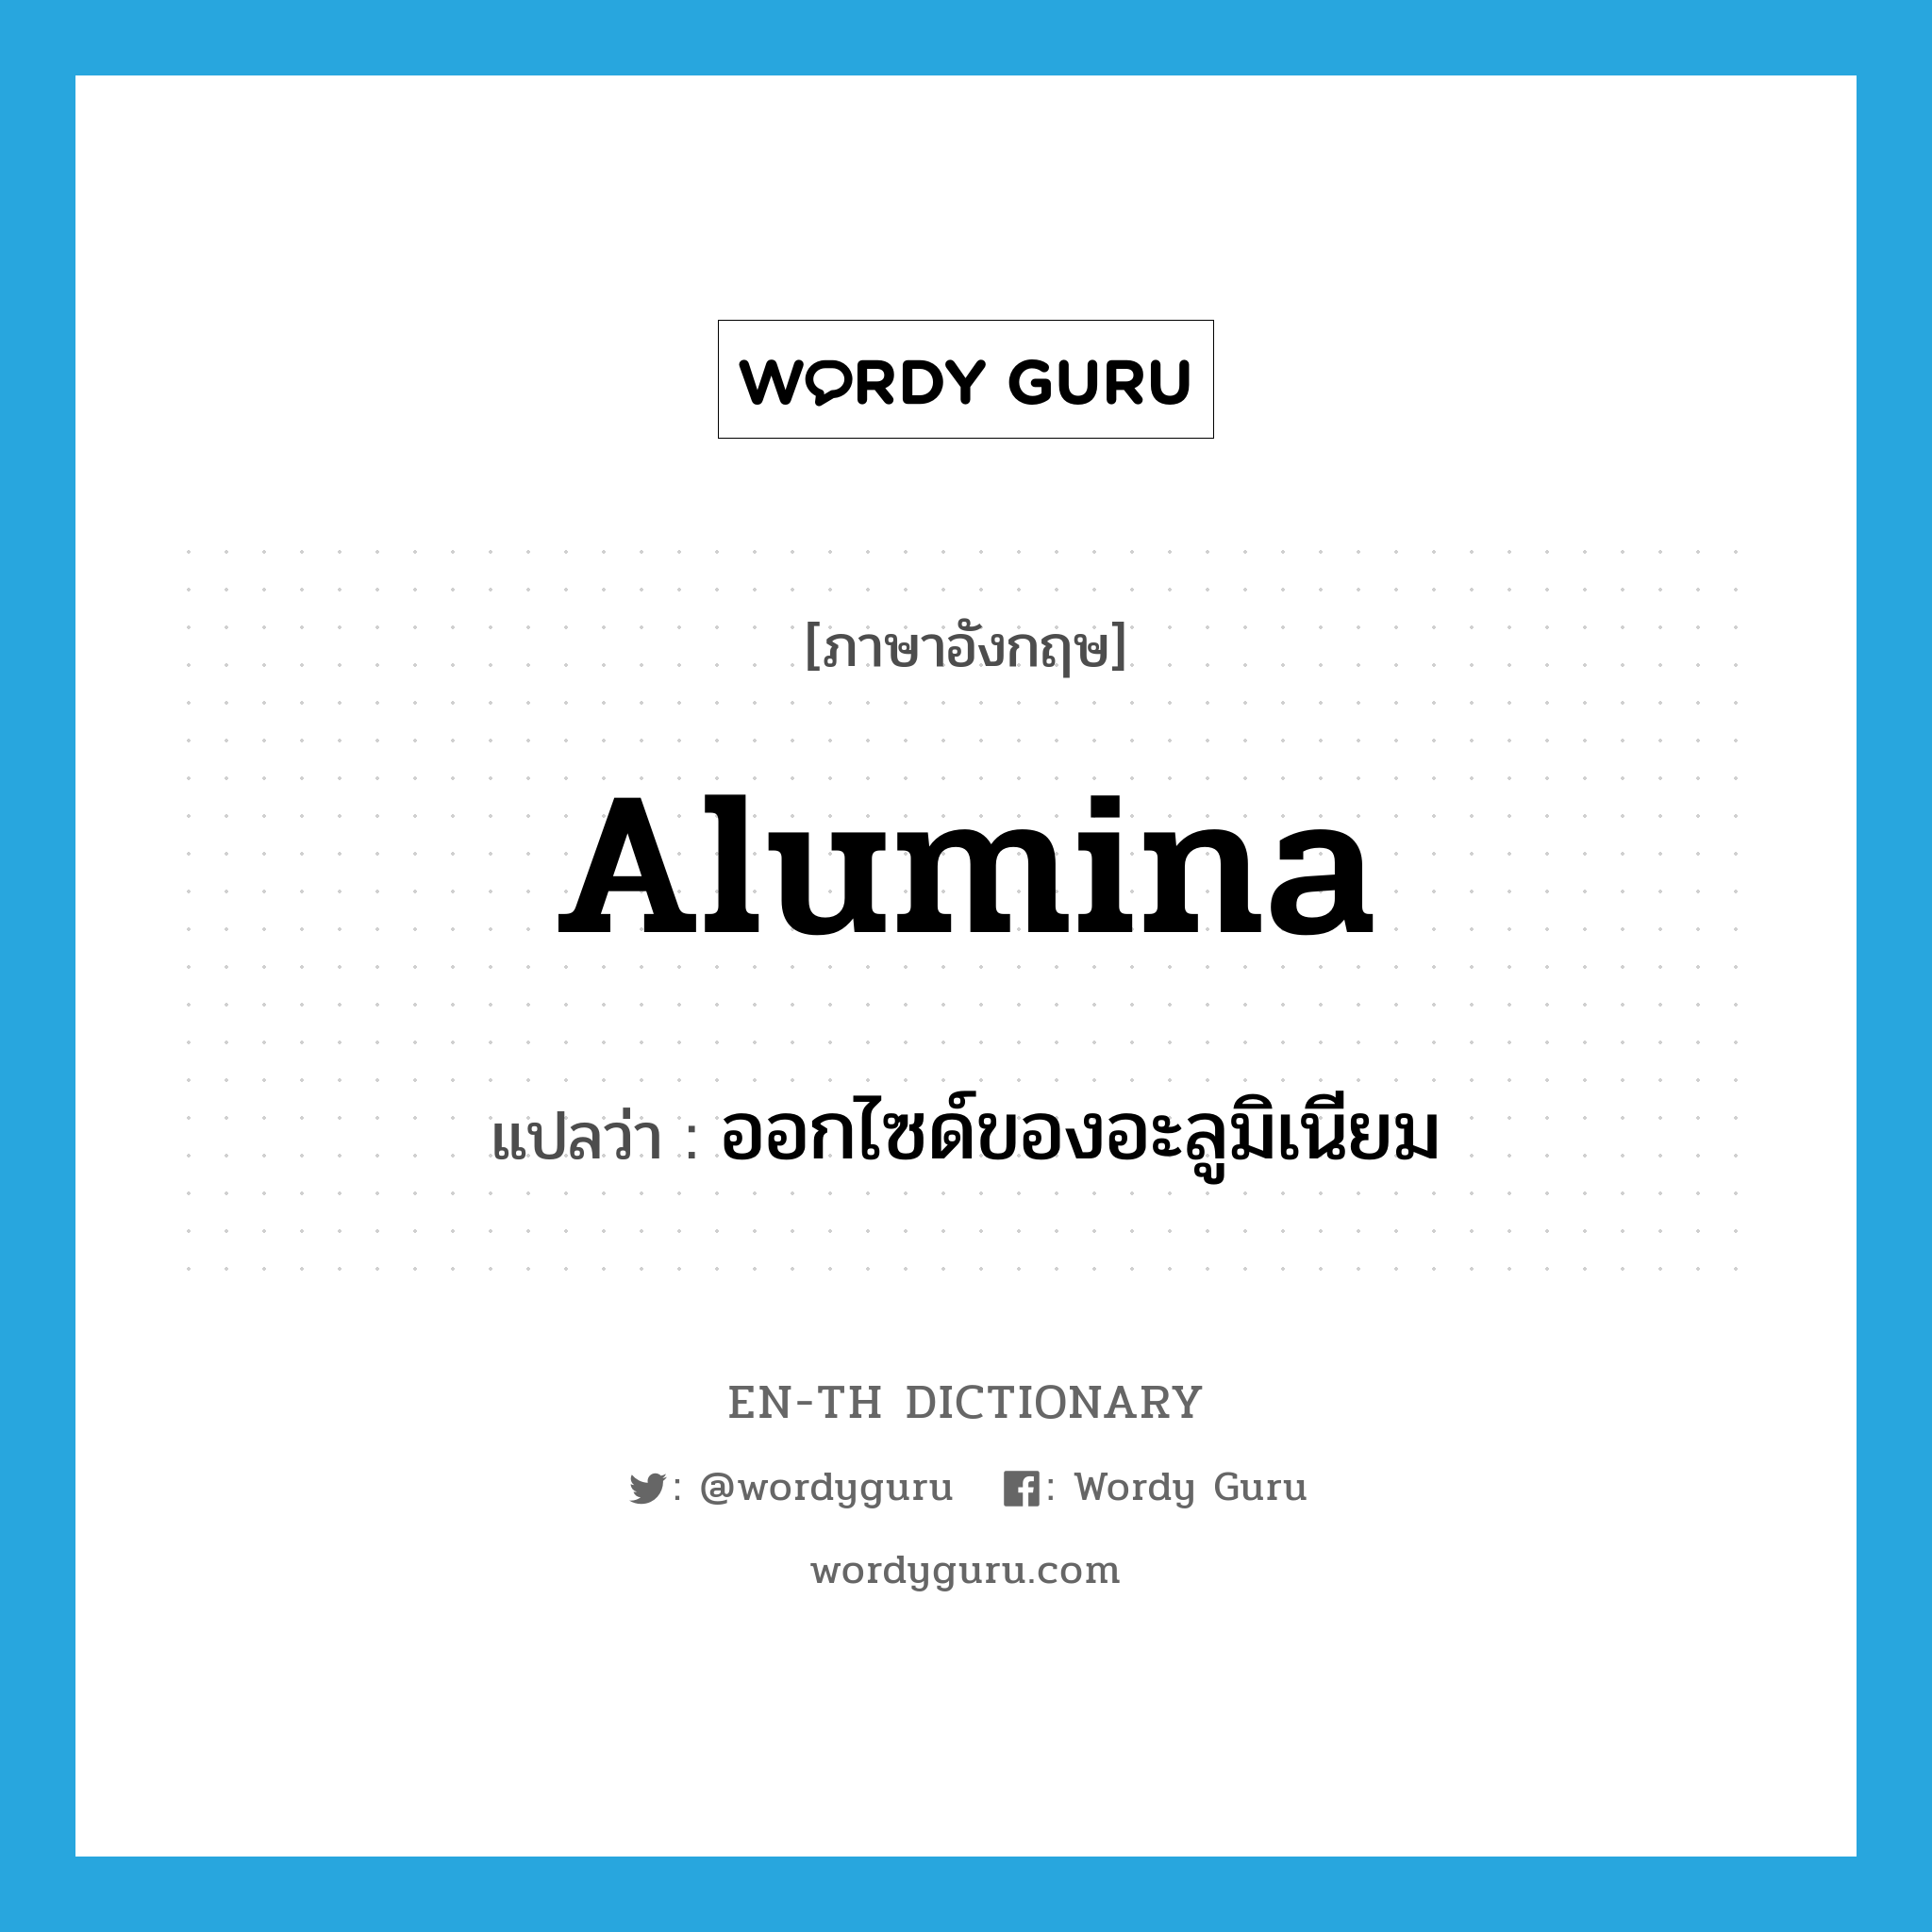 alumina แปลว่า?, คำศัพท์ภาษาอังกฤษ alumina แปลว่า ออกไซด์ของอะลูมิเนียม ประเภท N หมวด N